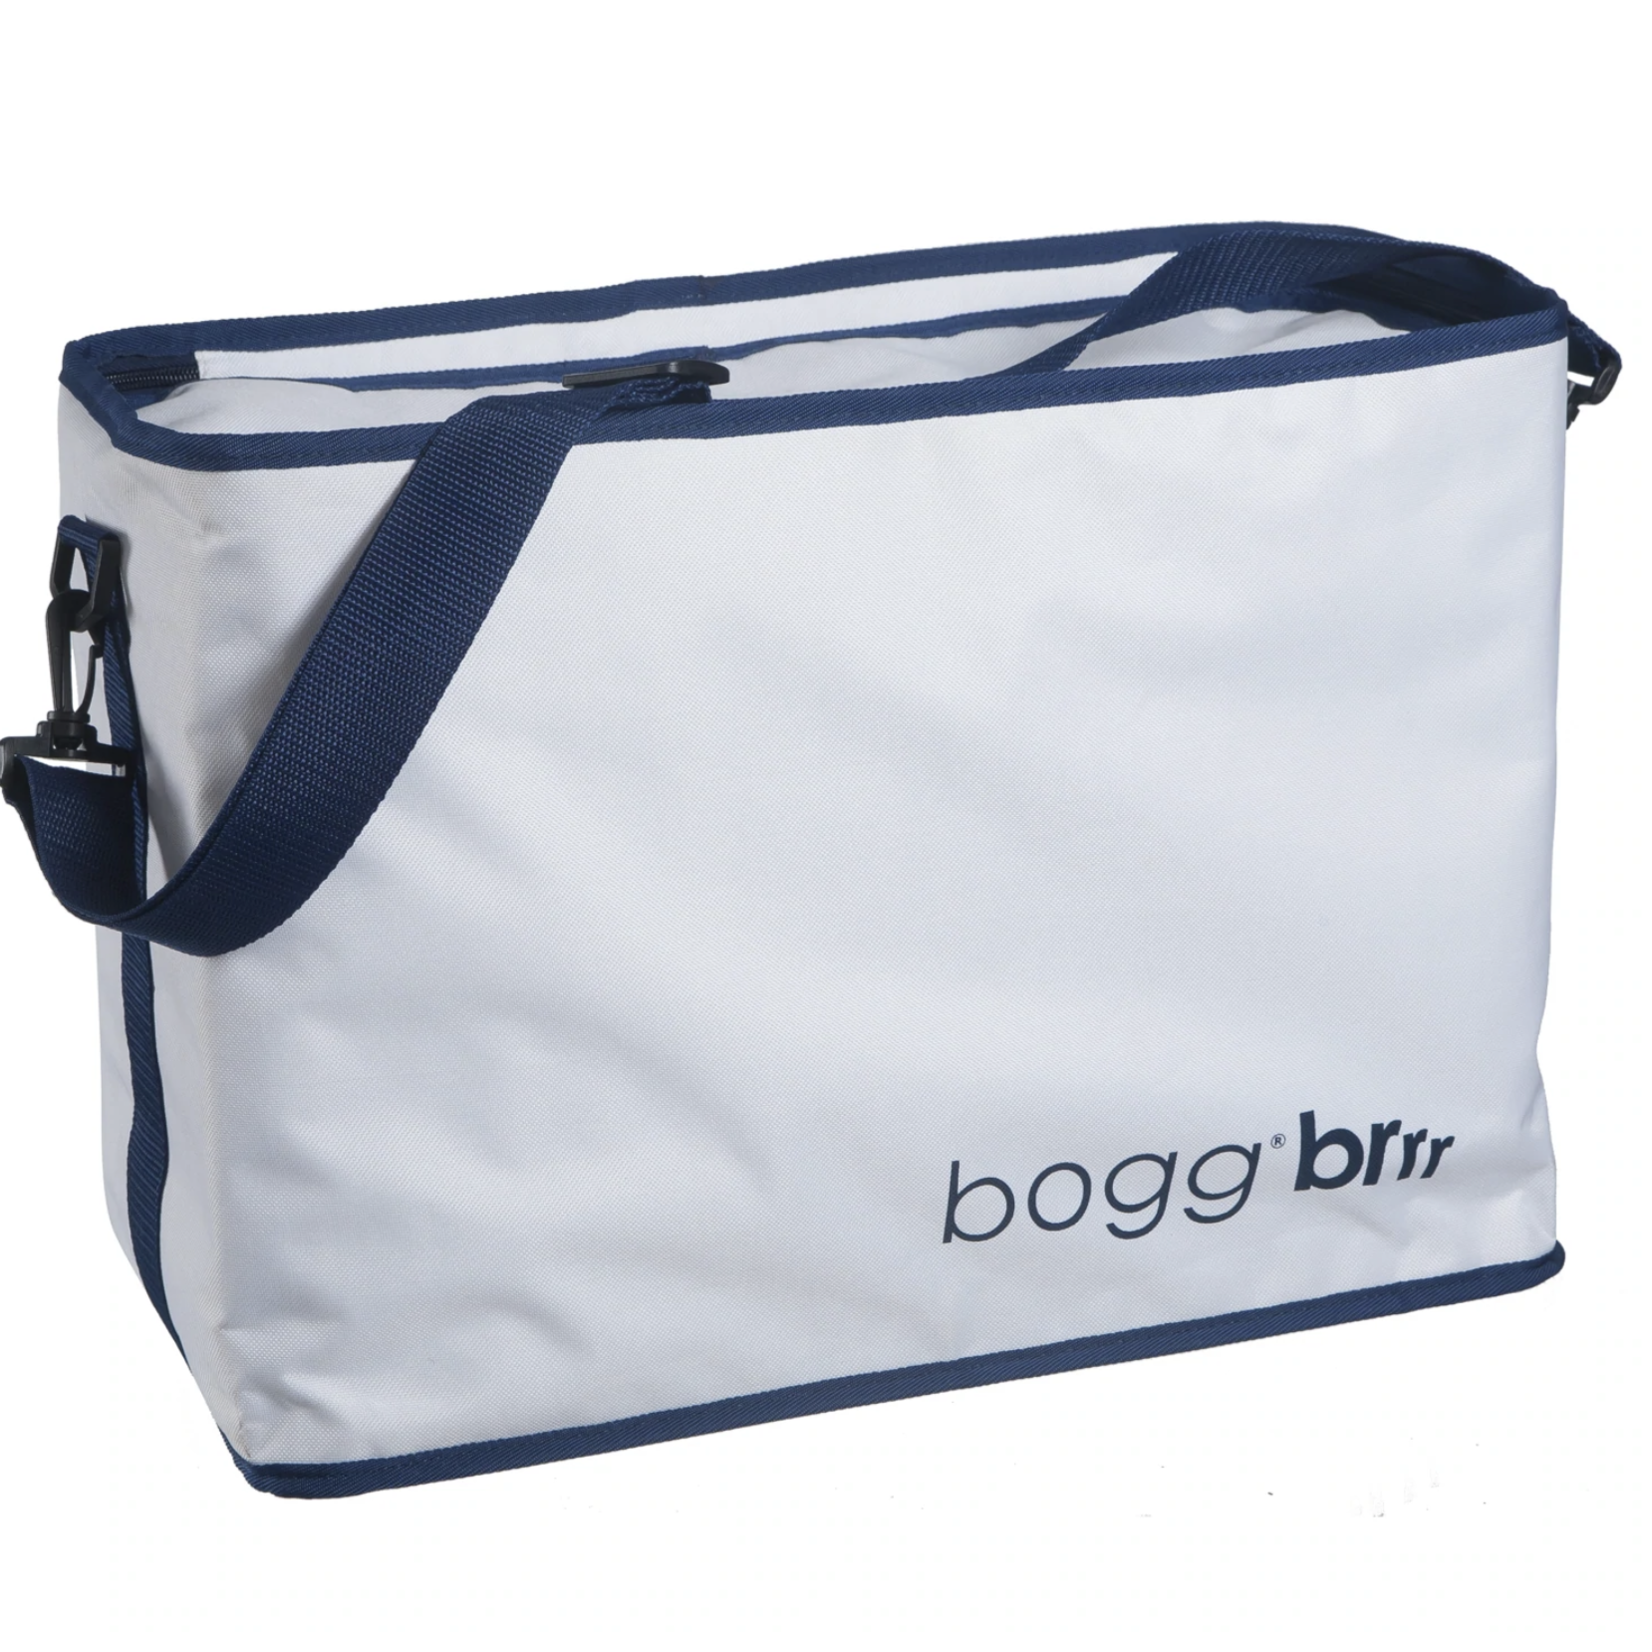 Bogg Bags Original Bogg Brr White - Cooler Inserts